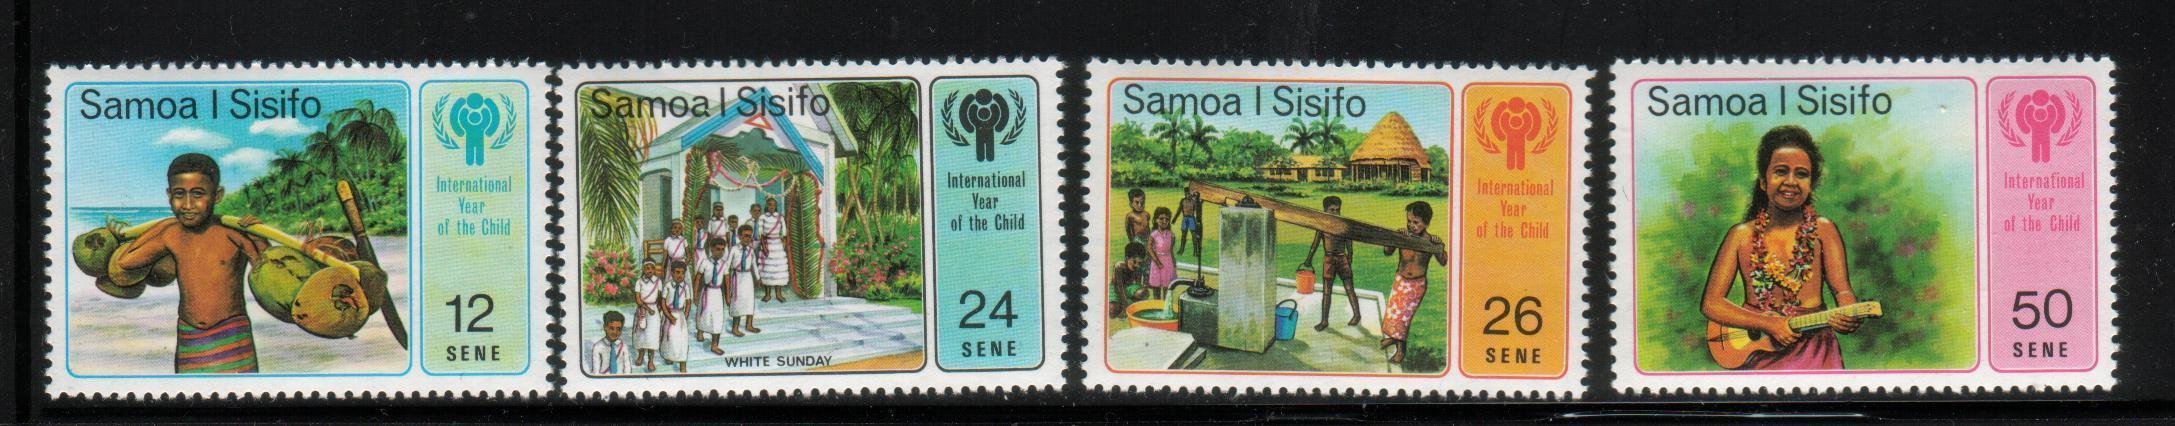 SAMOA 1979 INTERNATIONAL YEAR OF THE CHILD SET OF 4 NHM - Samoa